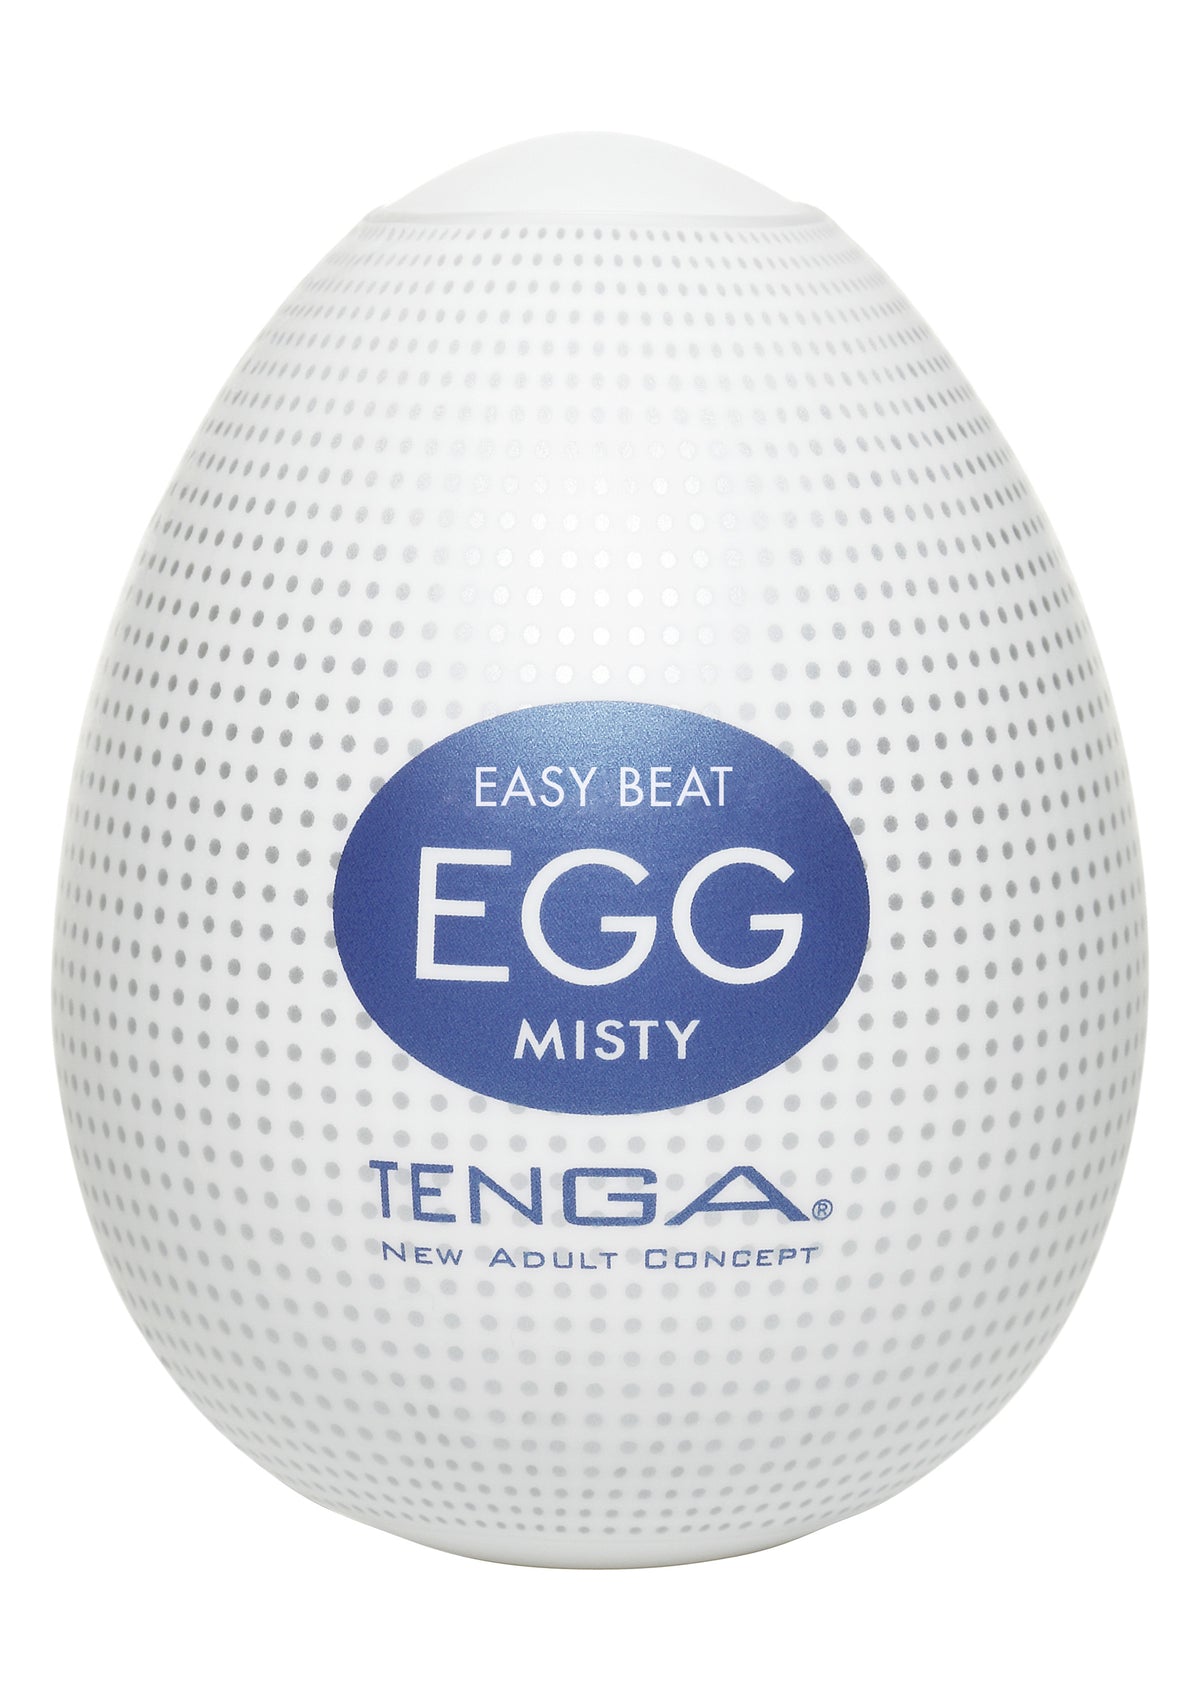 Tenga Egg Misty (6PCS)